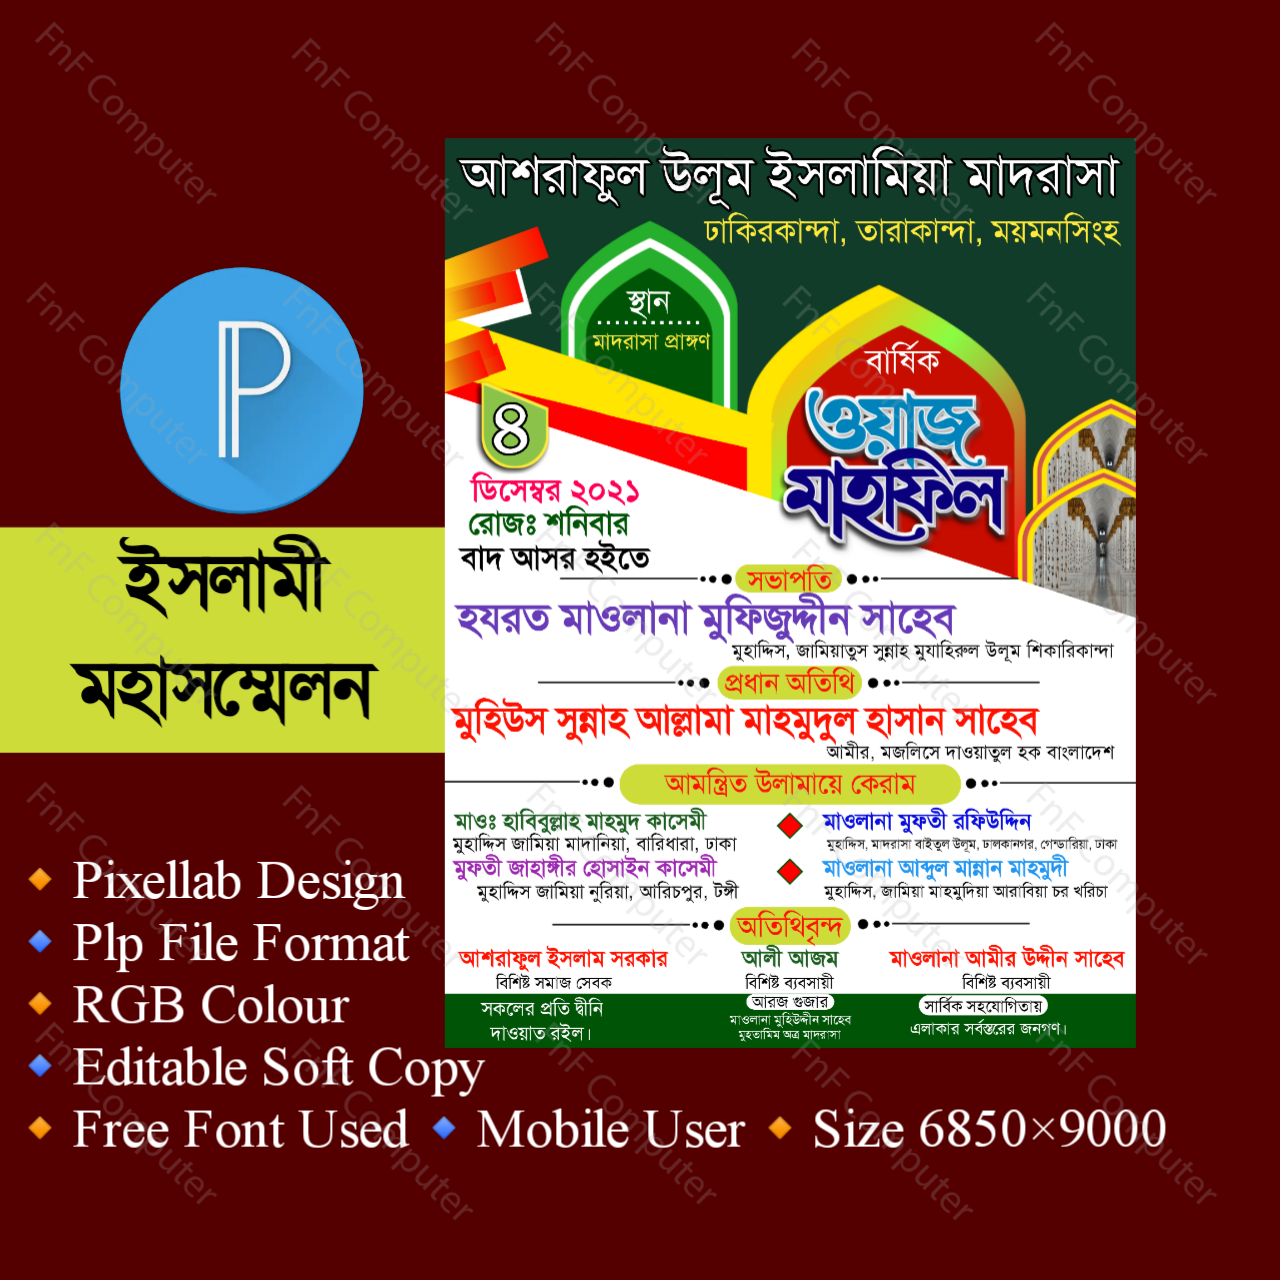 Waz Mahfil poster design PLP File